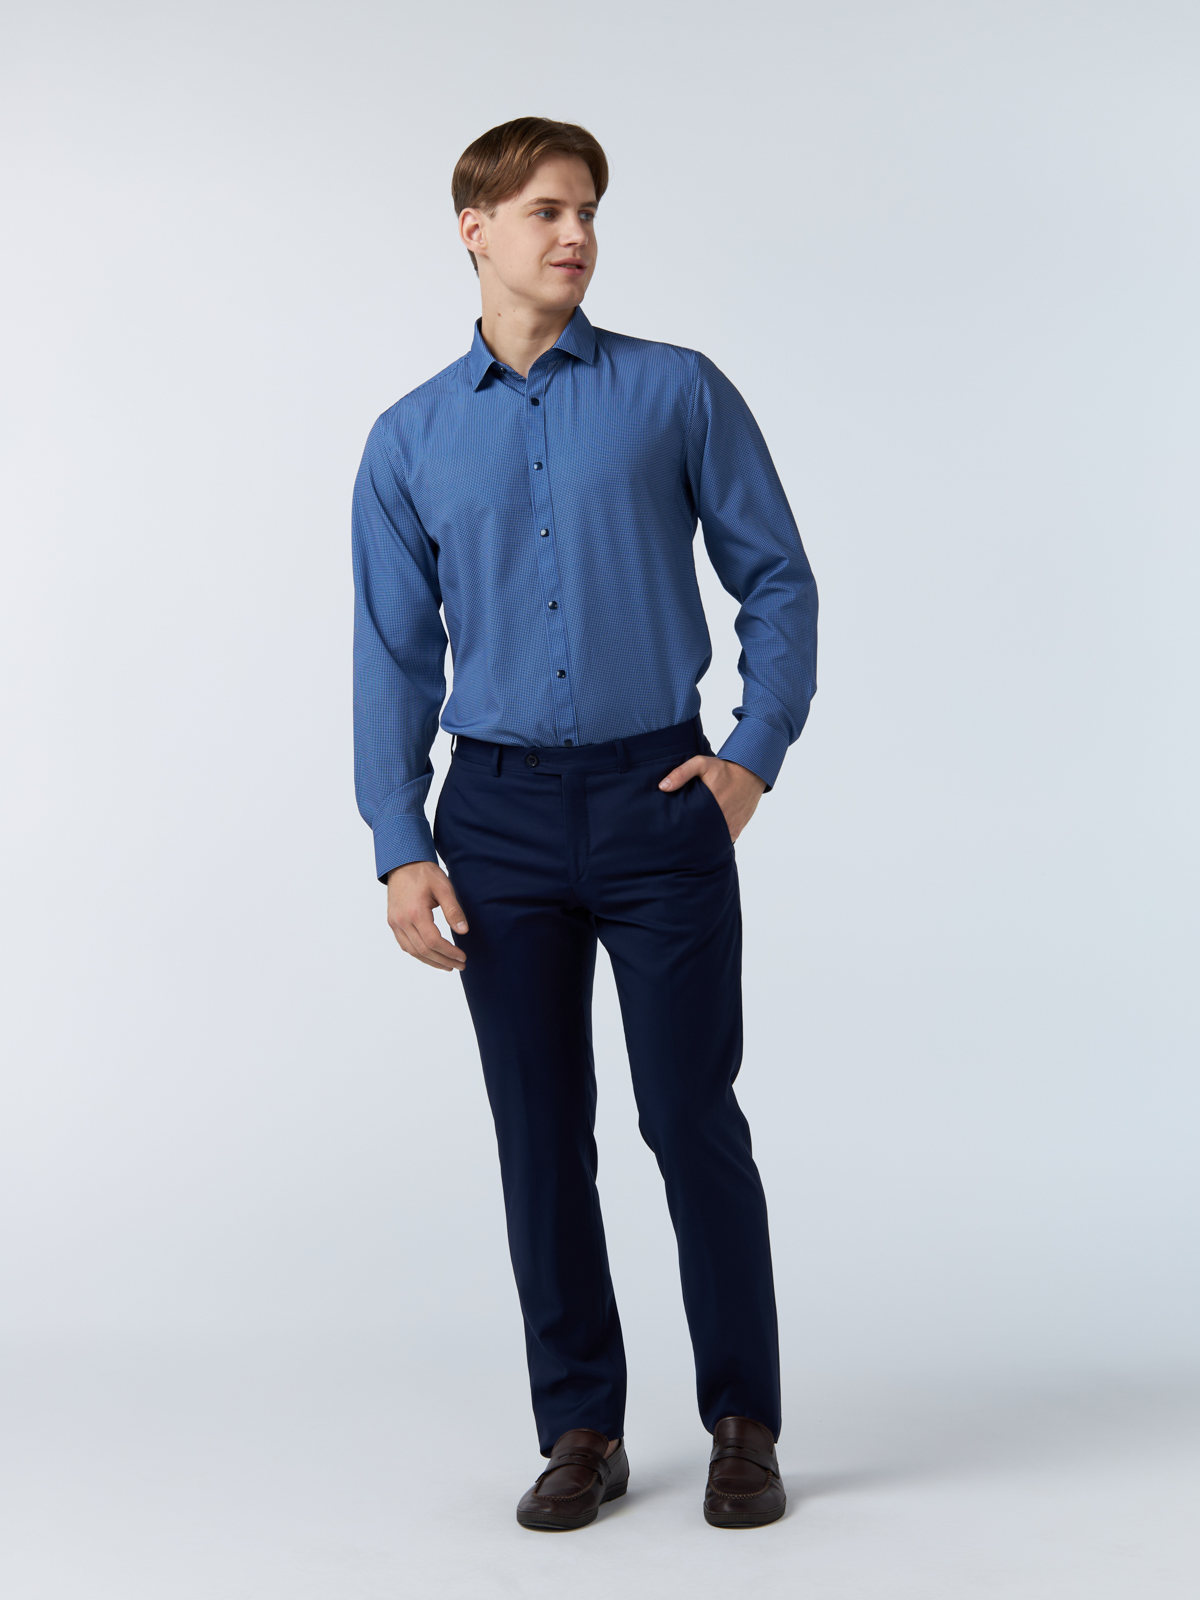 Рубашка мужская Westhero 9-675-56 синяя S